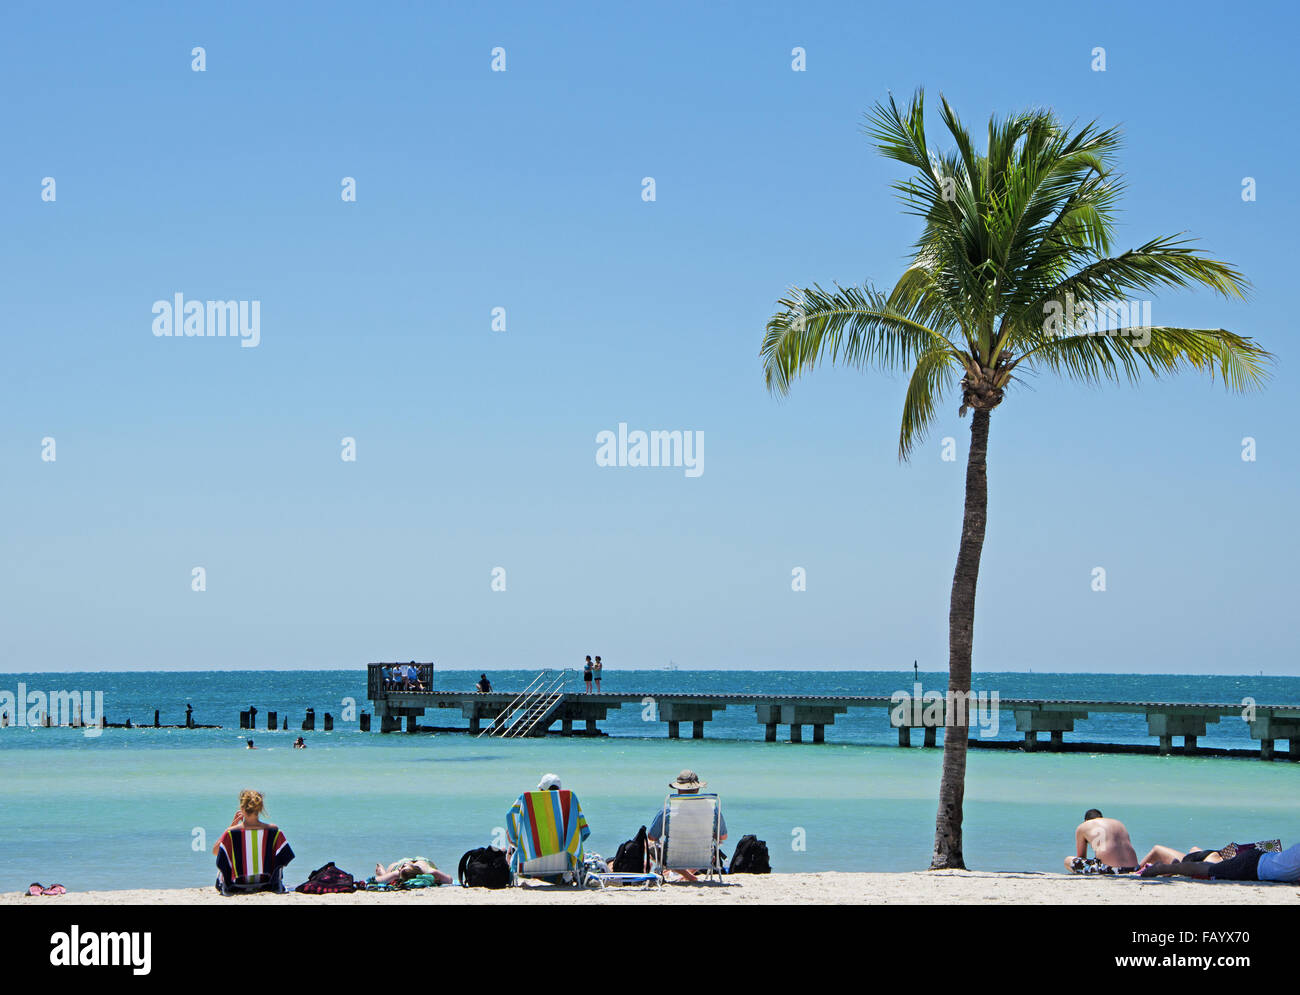 États-unis d'Amérique, Floride : détente sur la plage, plage et jetée de Higgs, Key West, clés, Cayo Hueso, Océan Atlantique Banque D'Images